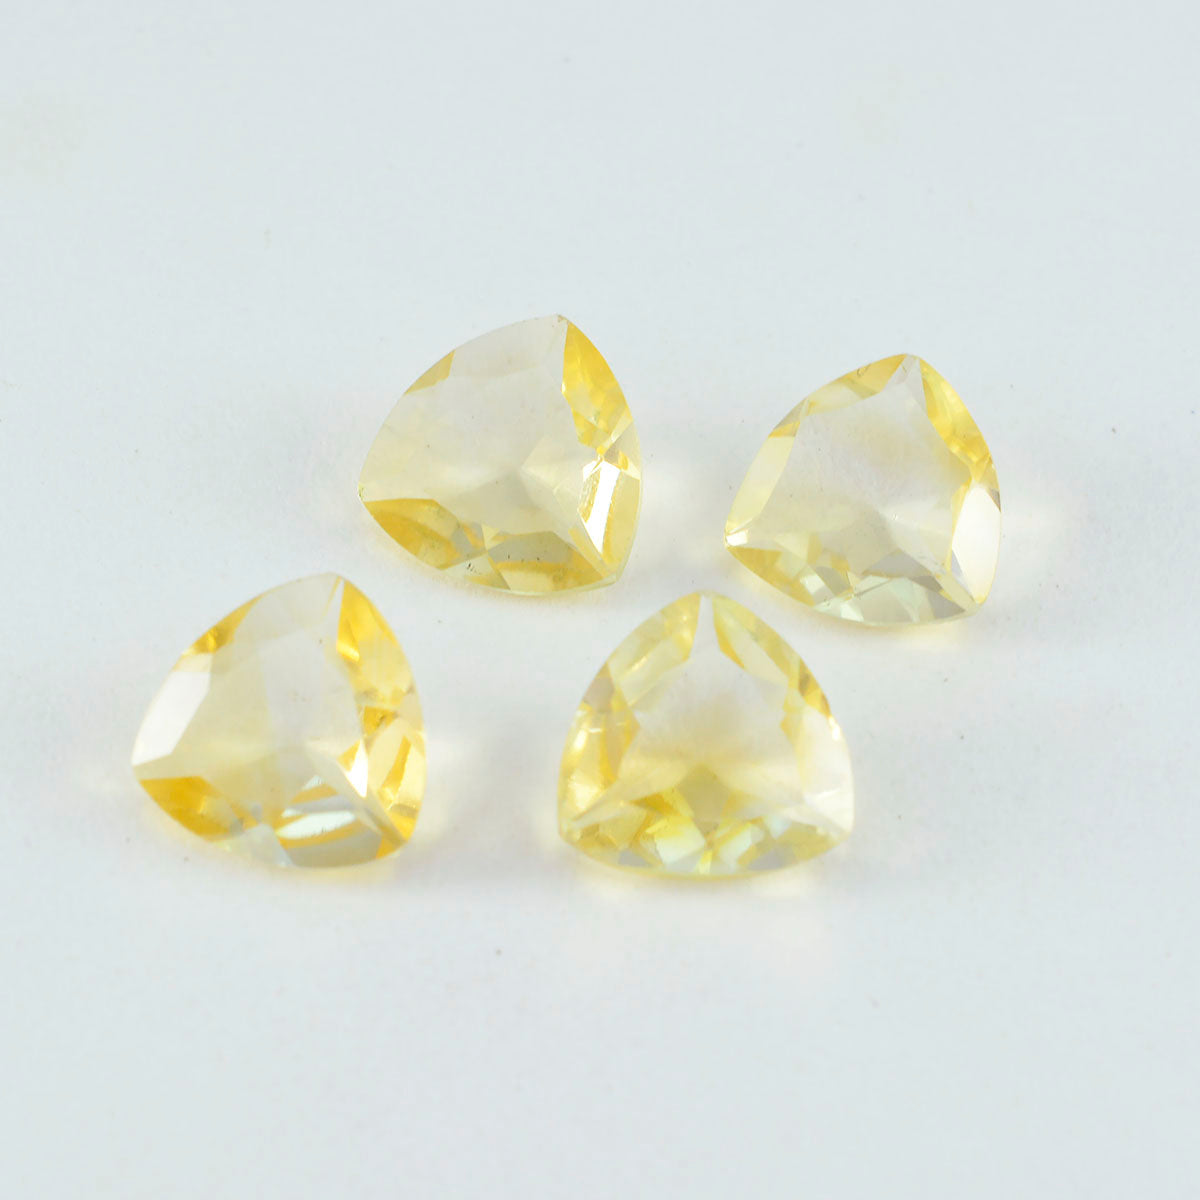 riyogems 1 шт., натуральный желтый цитрин, ограненные 12x12 мм, форма триллиона, милые качественные драгоценные камни